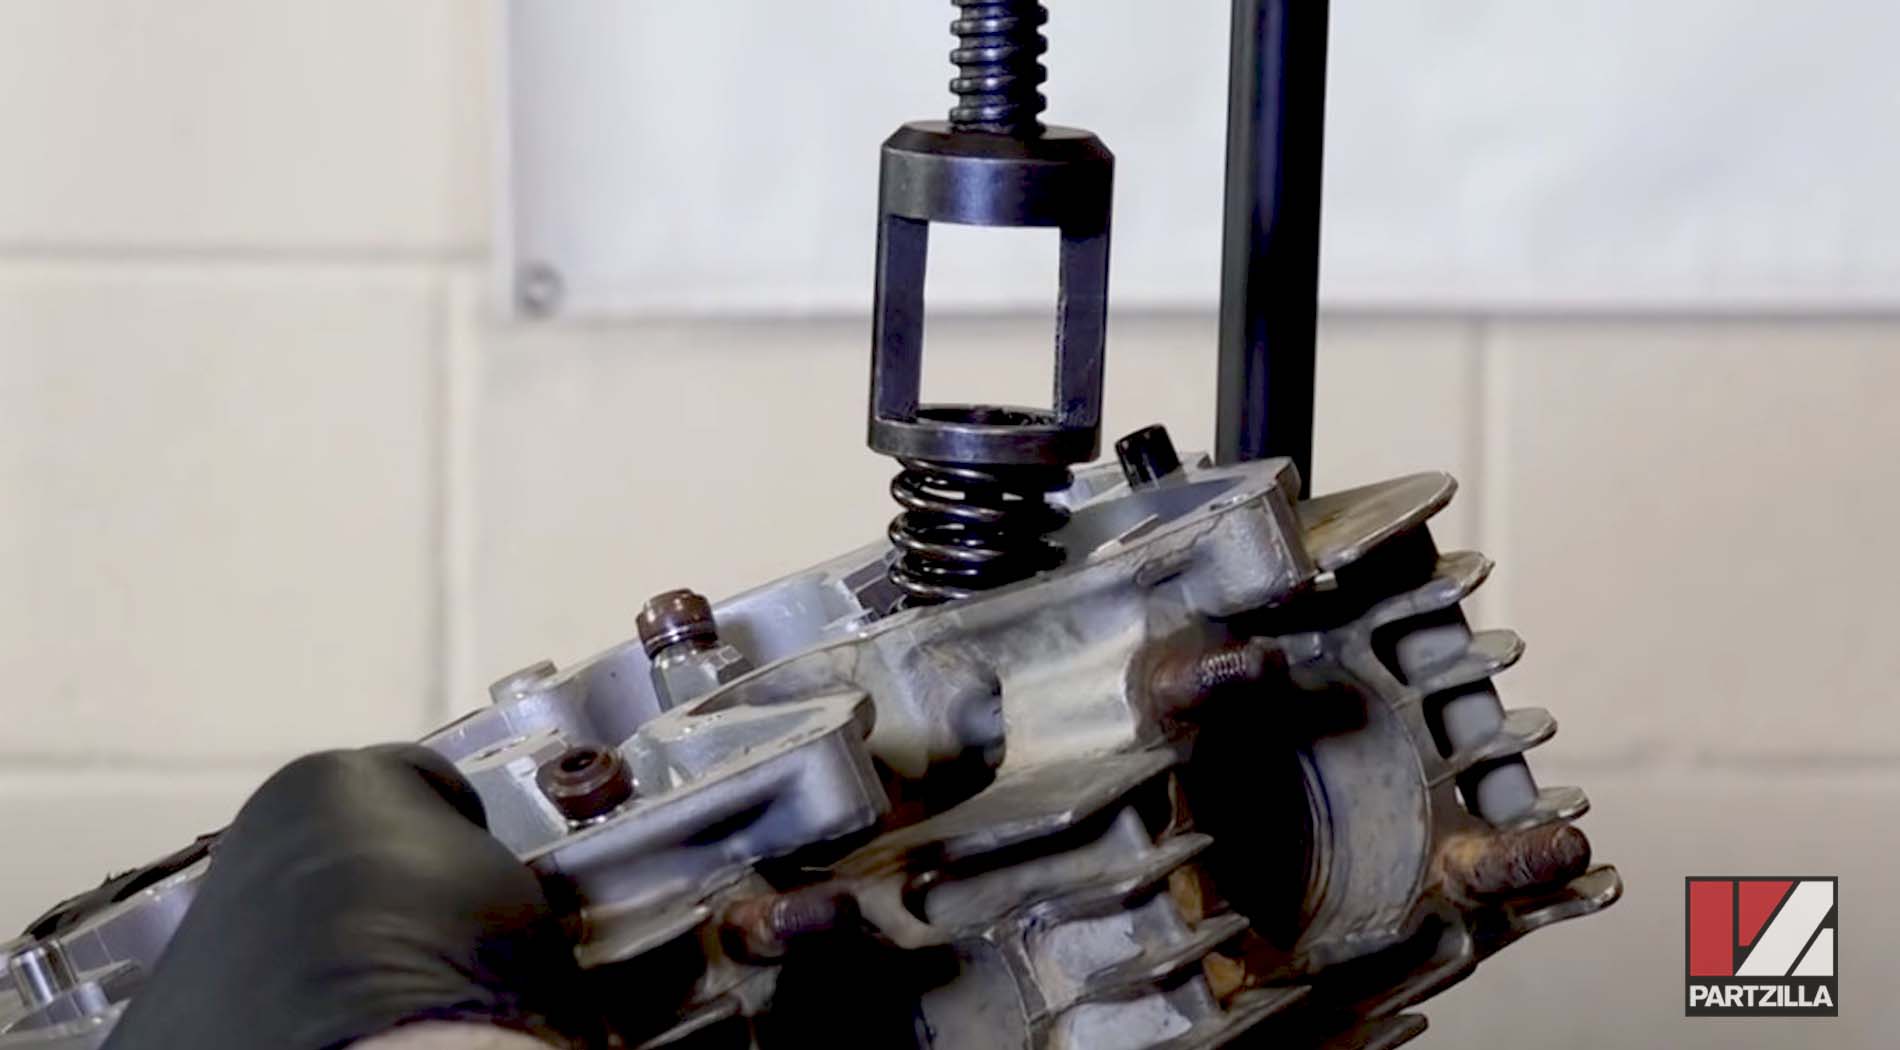 Honda TRX400 top end rebuild valve spring compressor